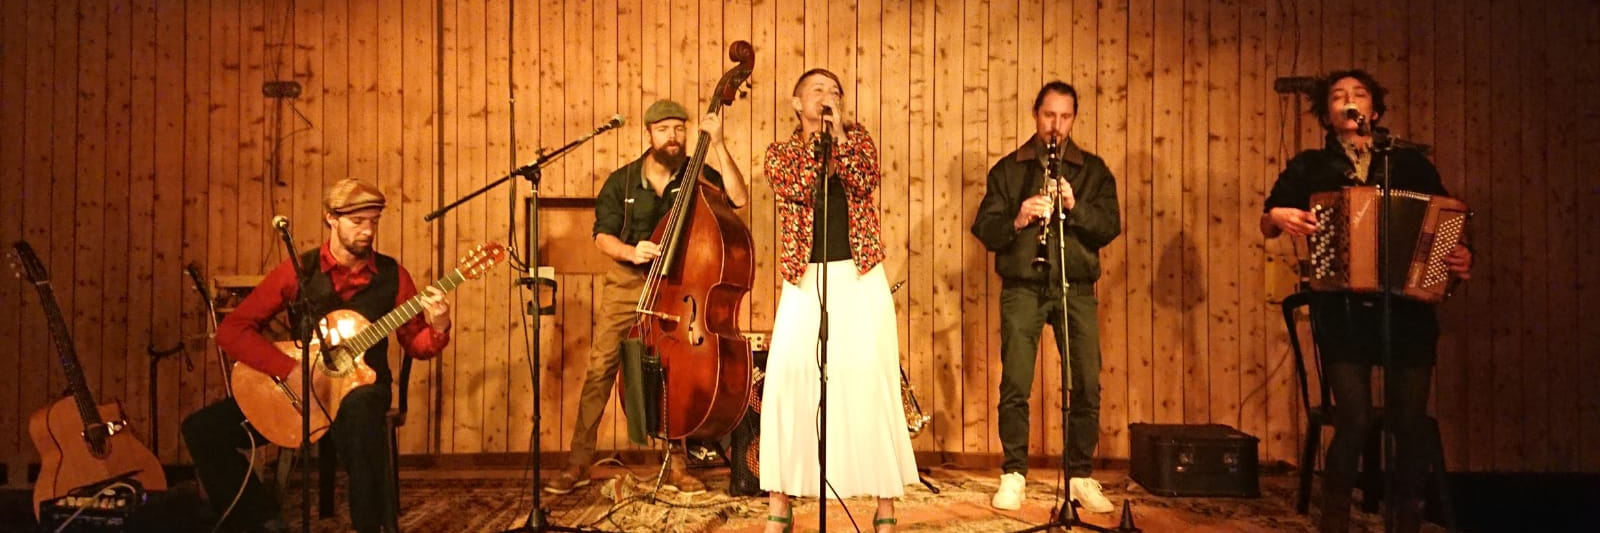 Caravane Guinguette, groupe de musique Folk en représentation à Haute Savoie - photo de couverture